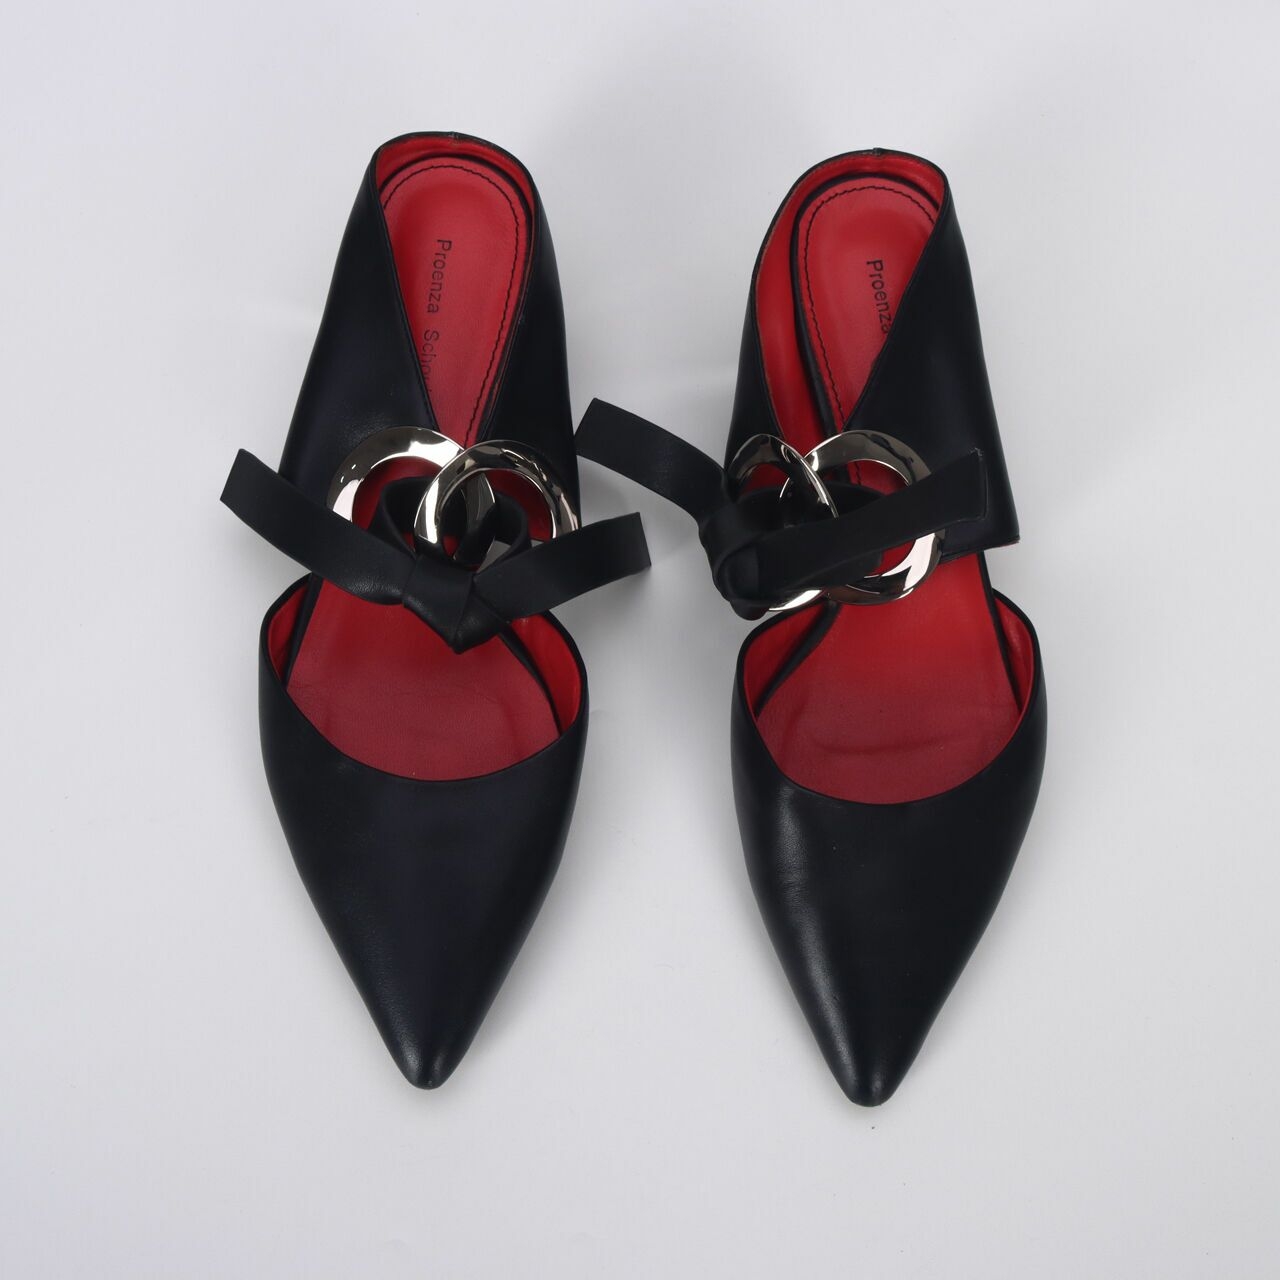 Proenza Schouler Black Leather Grommet Mirror Heels